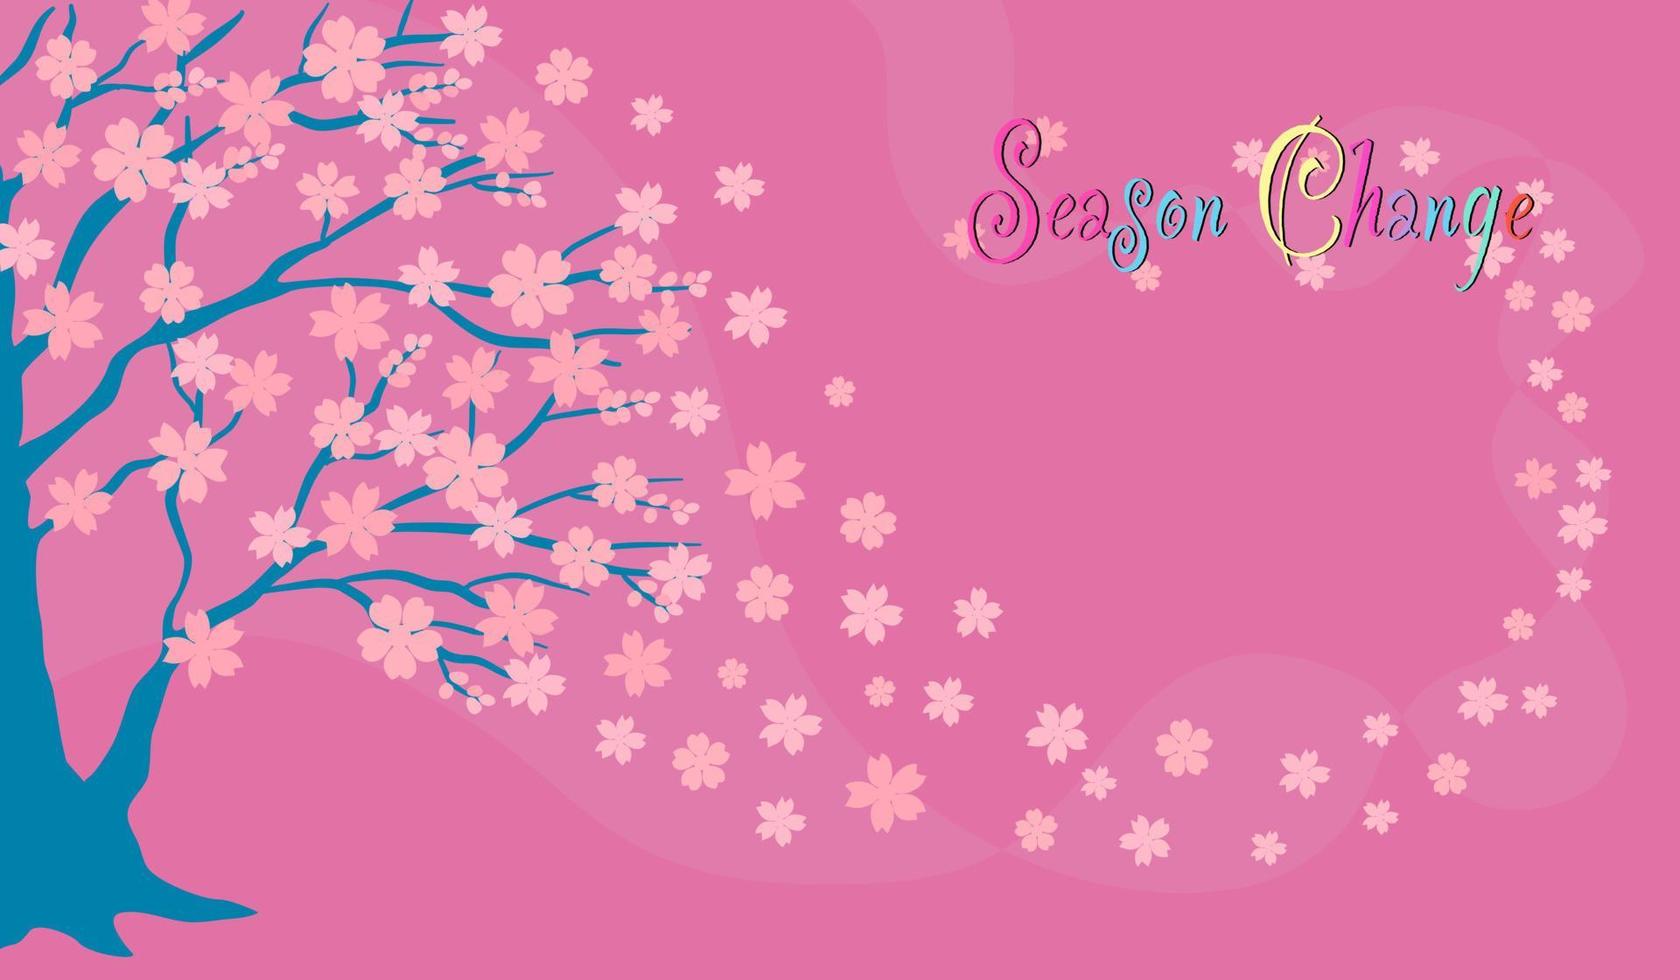 vektor der rosa sakura-blumenblüte auf blauem baum in der frühlingssaison, fliegende flora-designzeichnung mit jahreszeitwechseltexten auf rosa hintergrund